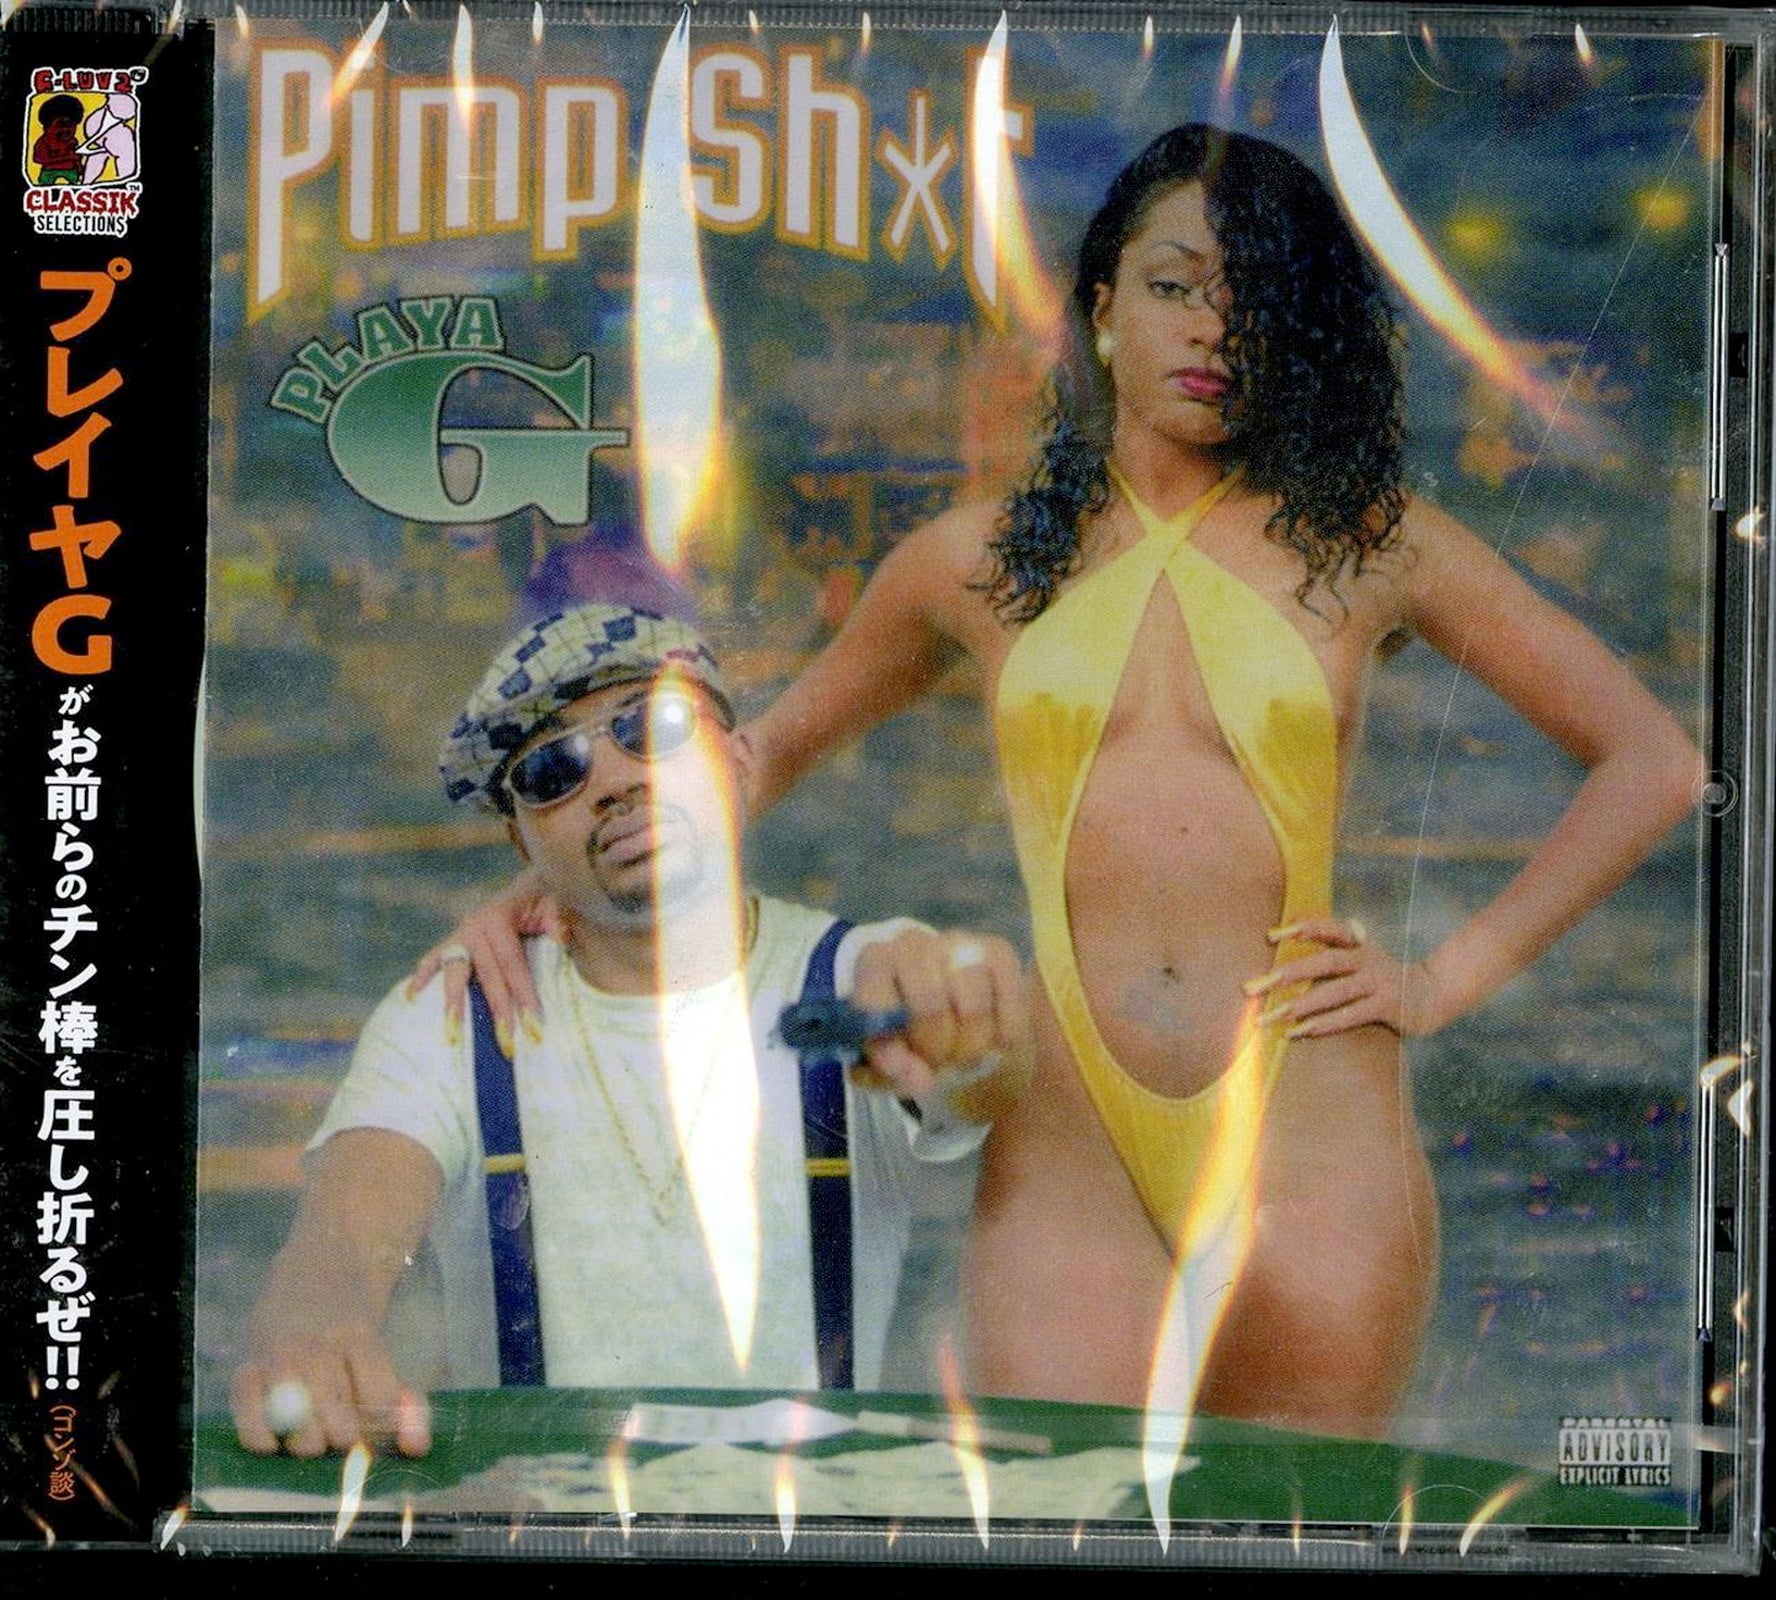 Playa G - Pimp Shit - Japan CD – CDs Vinyl Japan Store CD, Gangsta ...